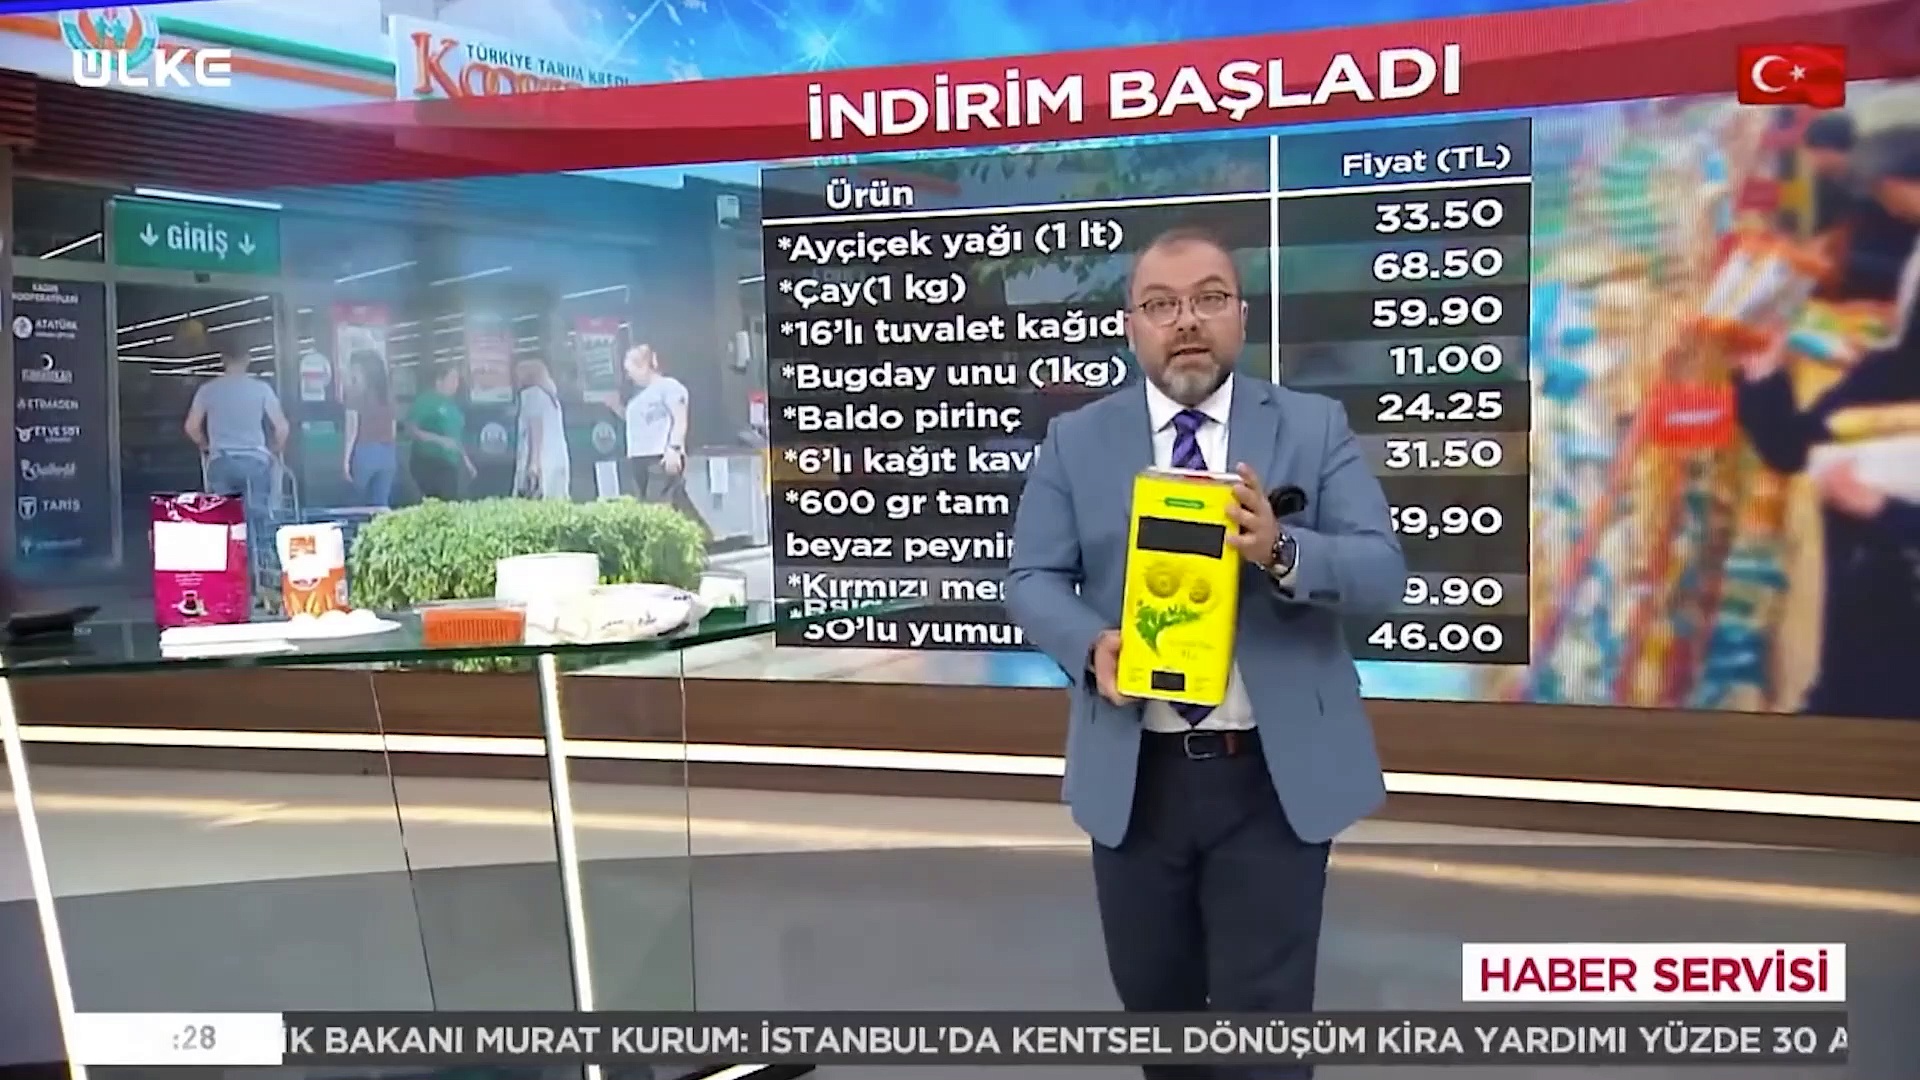 Ülke TV sunucusu Mustafa Yıldız, Tarım Kredi Kooperatifi'nin 1 TL'lik indirimini hesap makinasıyla hesapladı